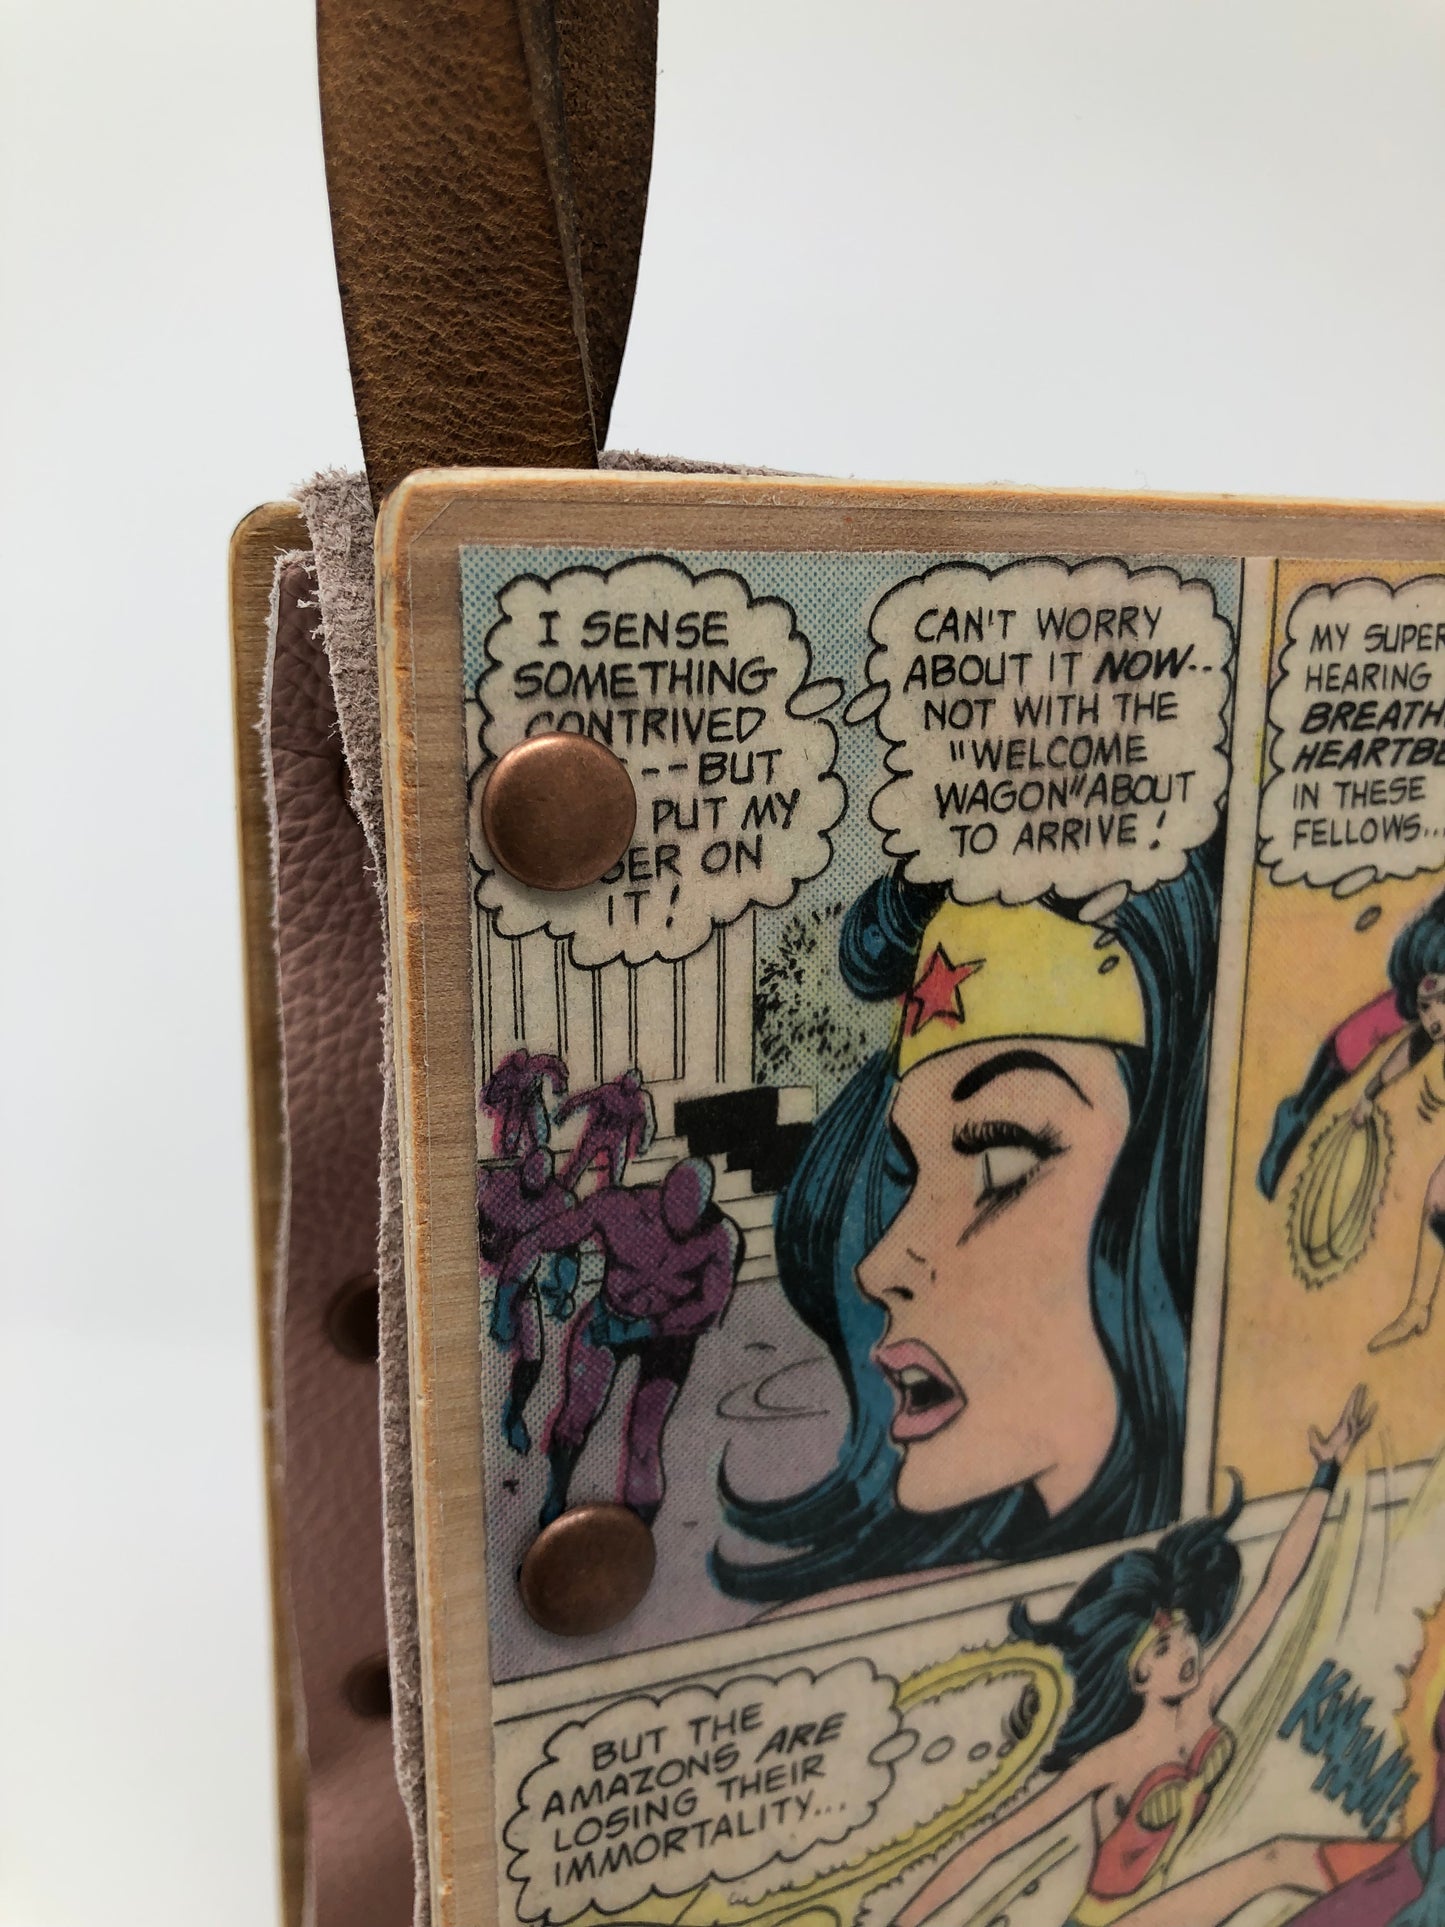 Vintage Wonder Woman Handbag - Paradise Island